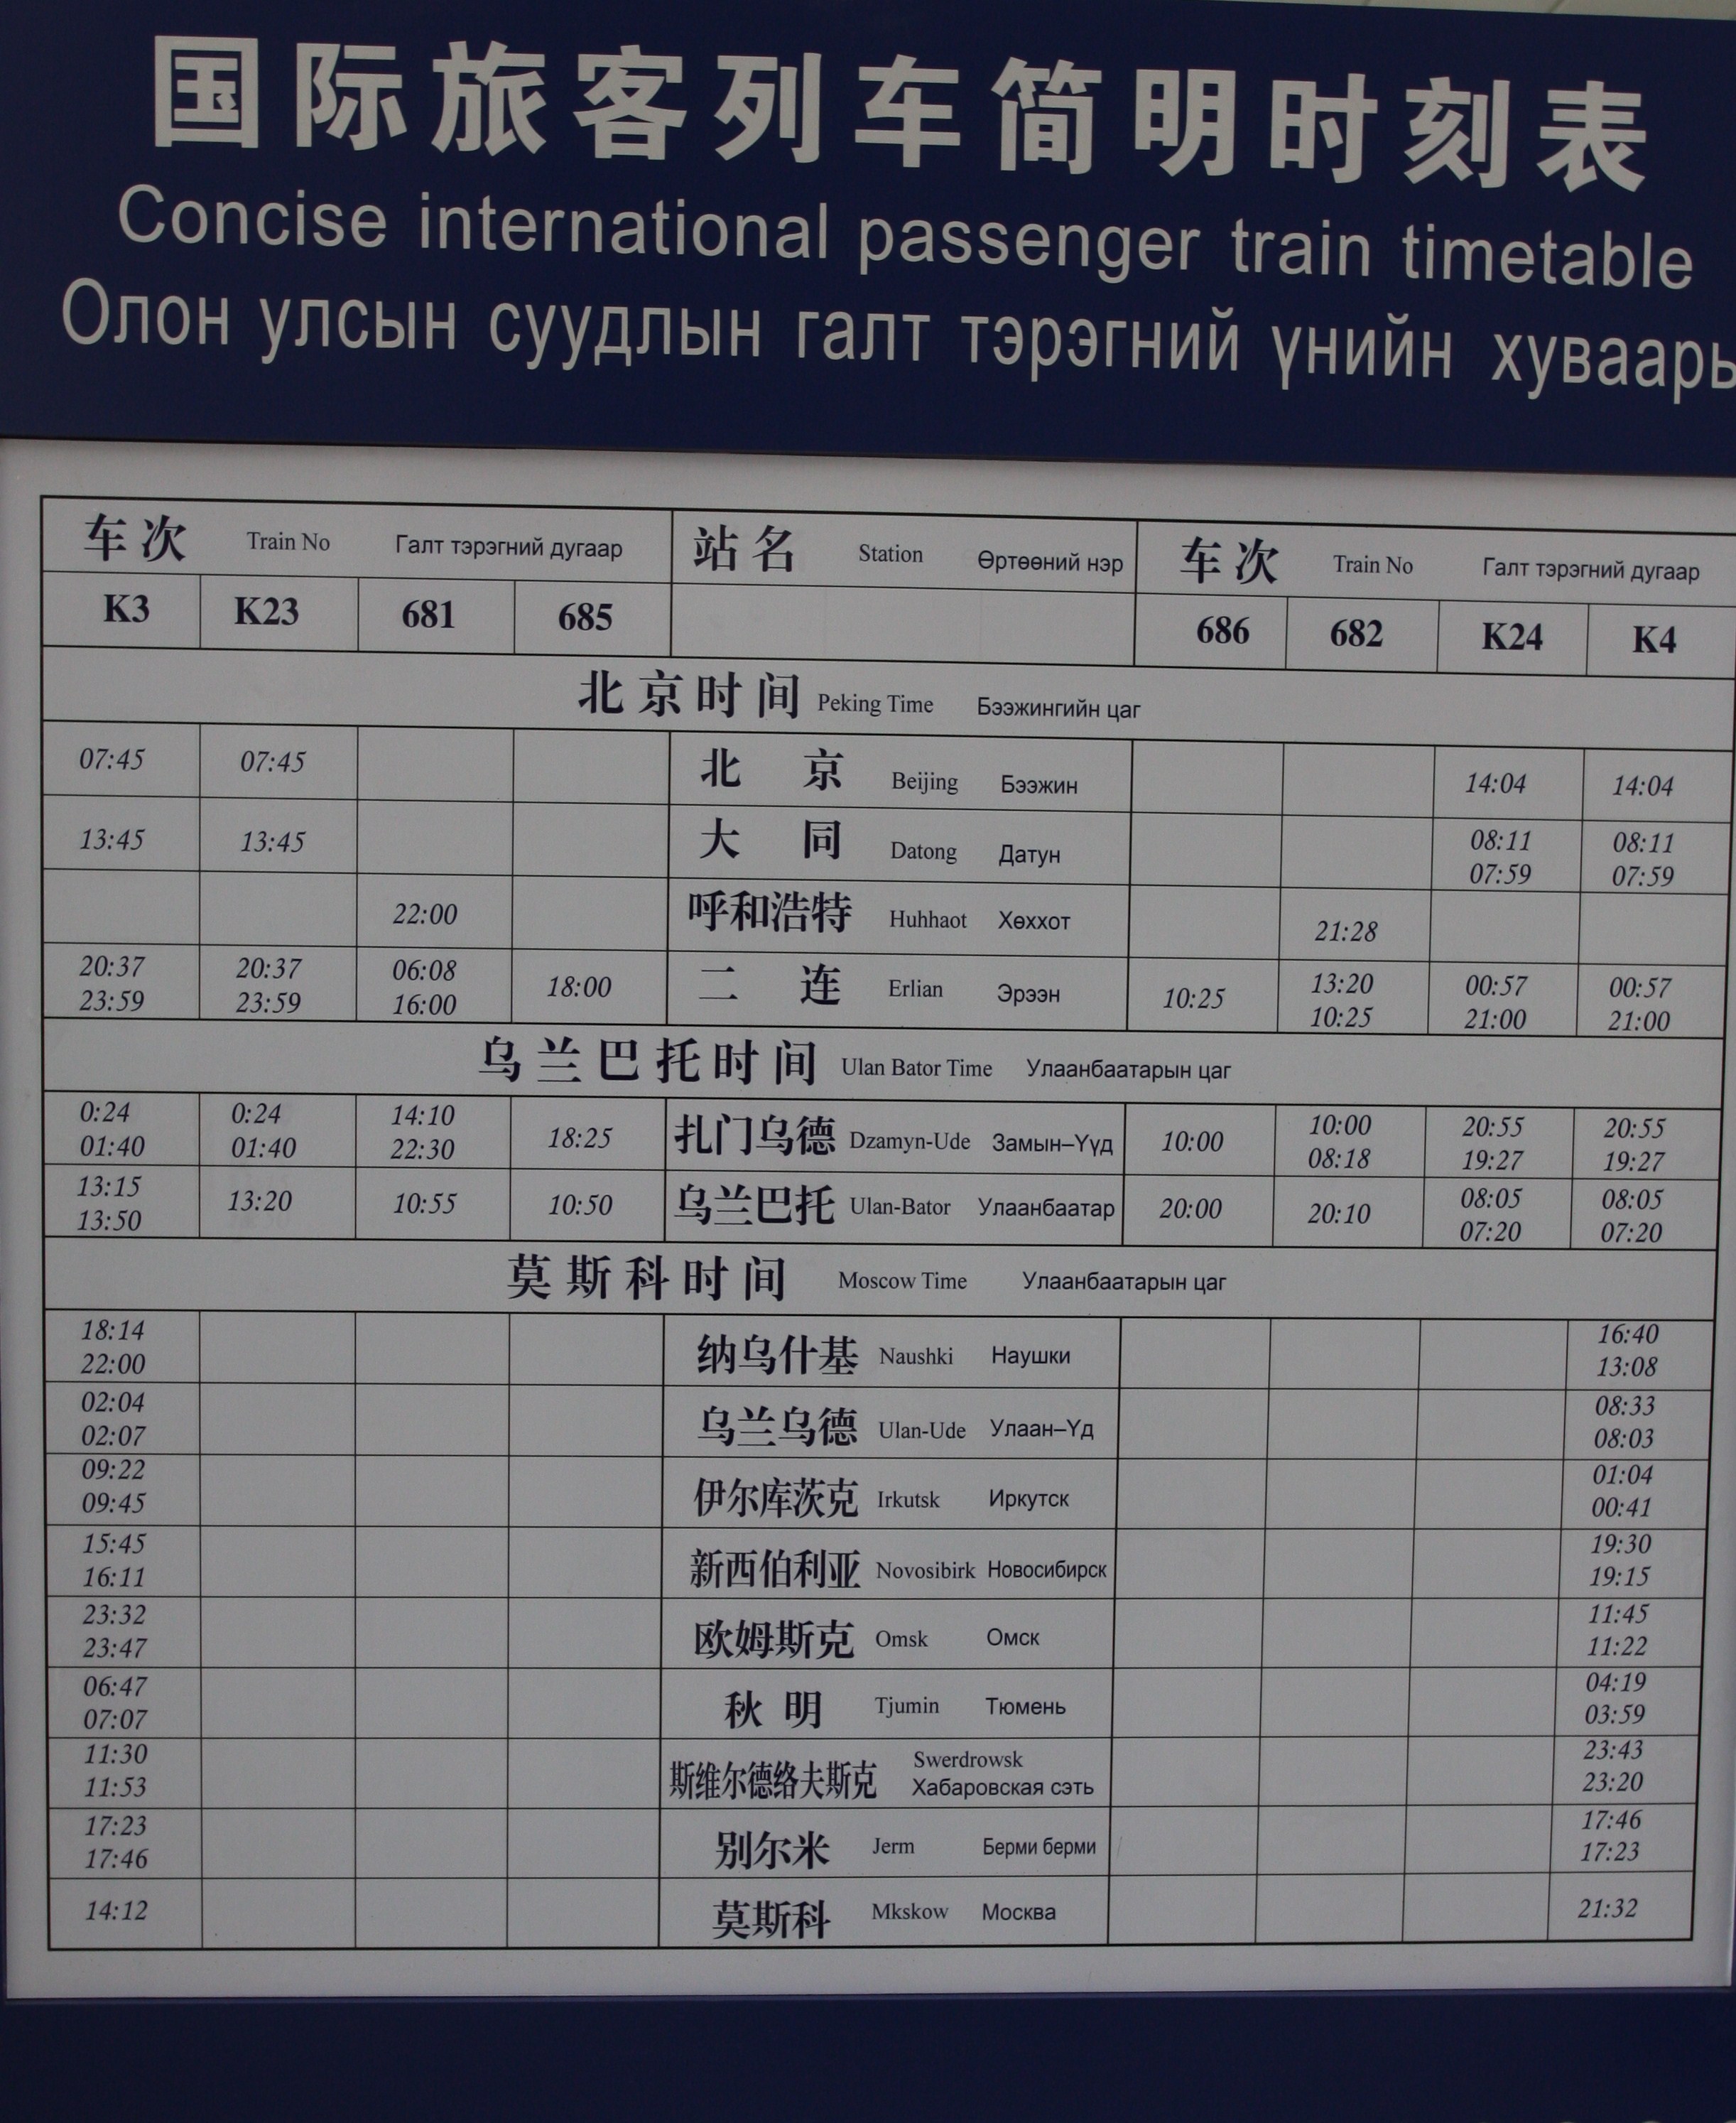 中国-蒙古国-俄罗斯《国际列车时刻表》